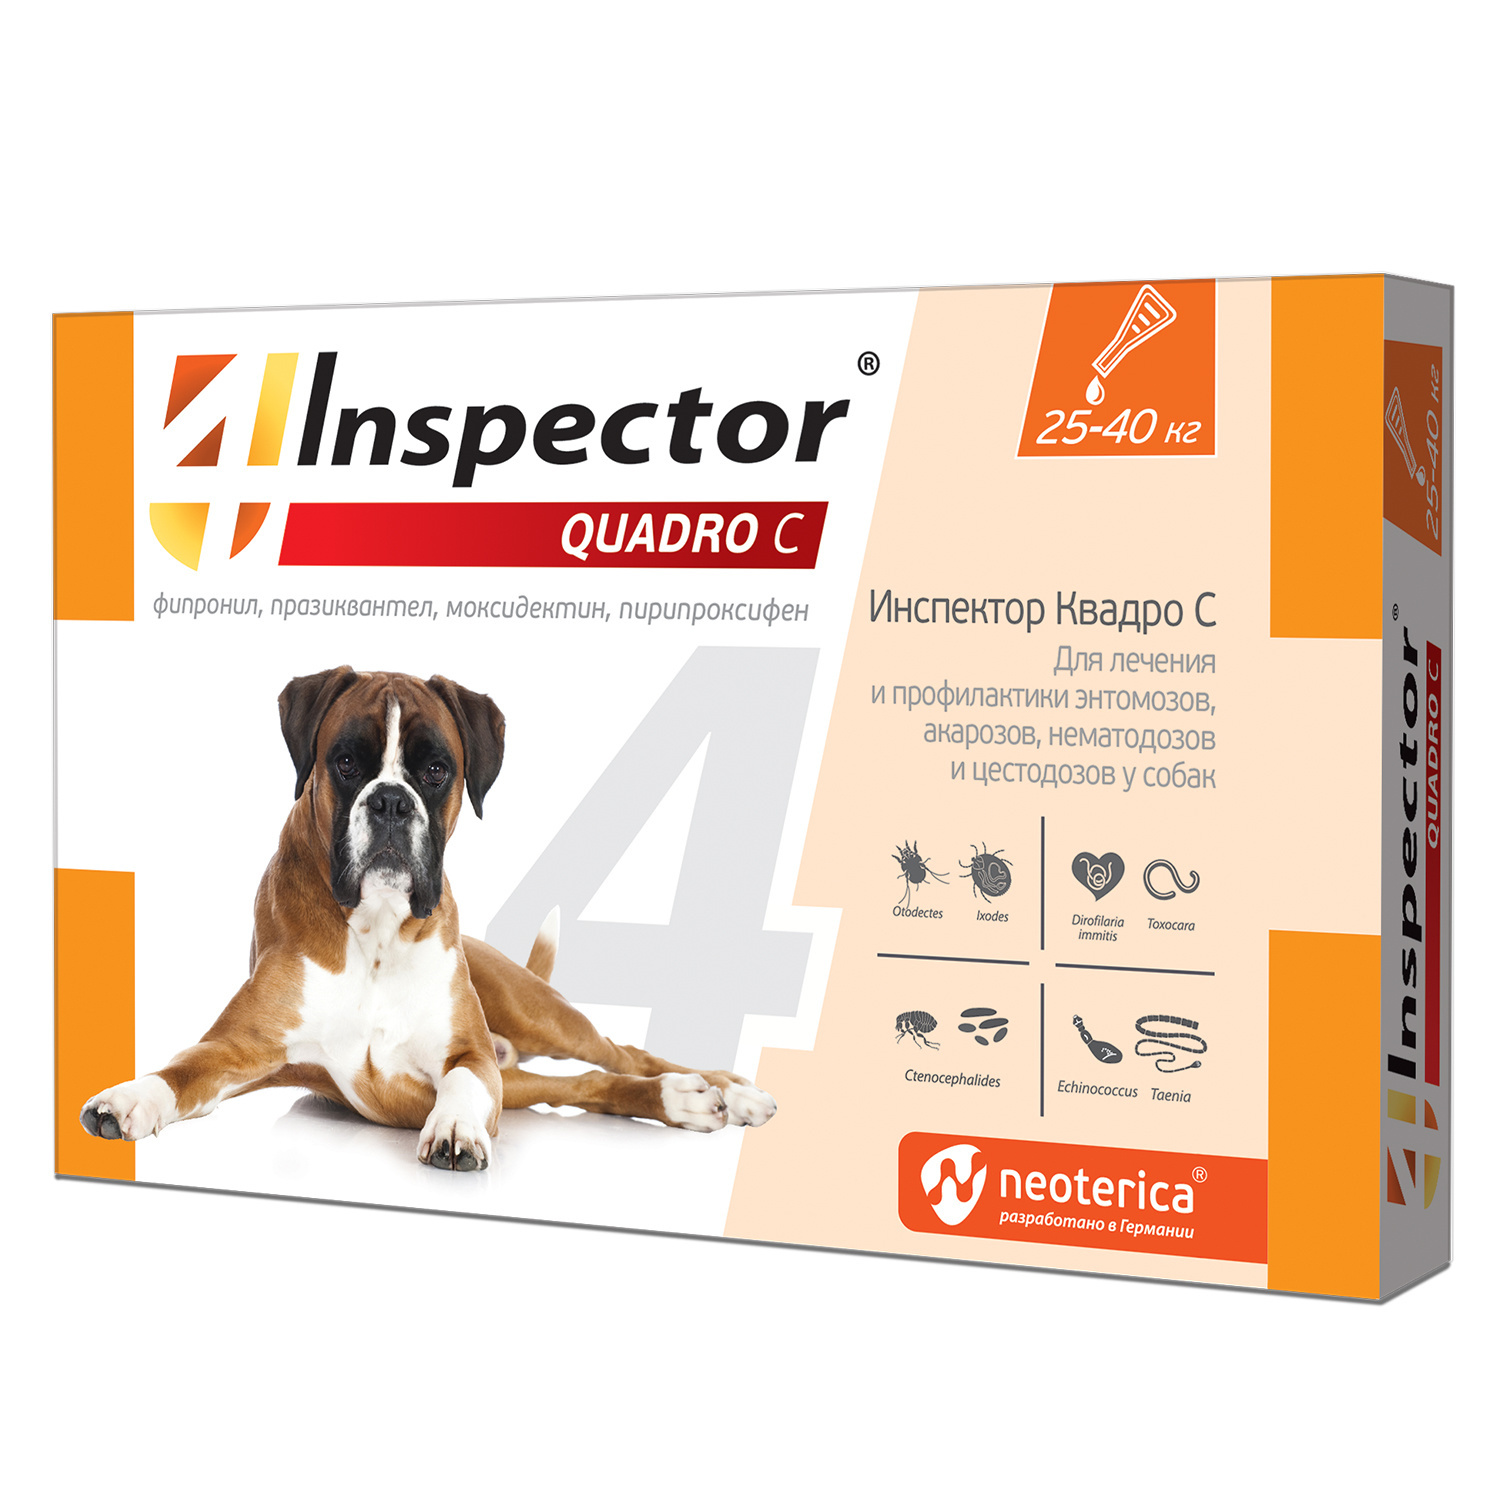 Inspector Inspector quadro капли на холку для собак 25-40 кг, от клещей, насекомых, глистов (24 г)